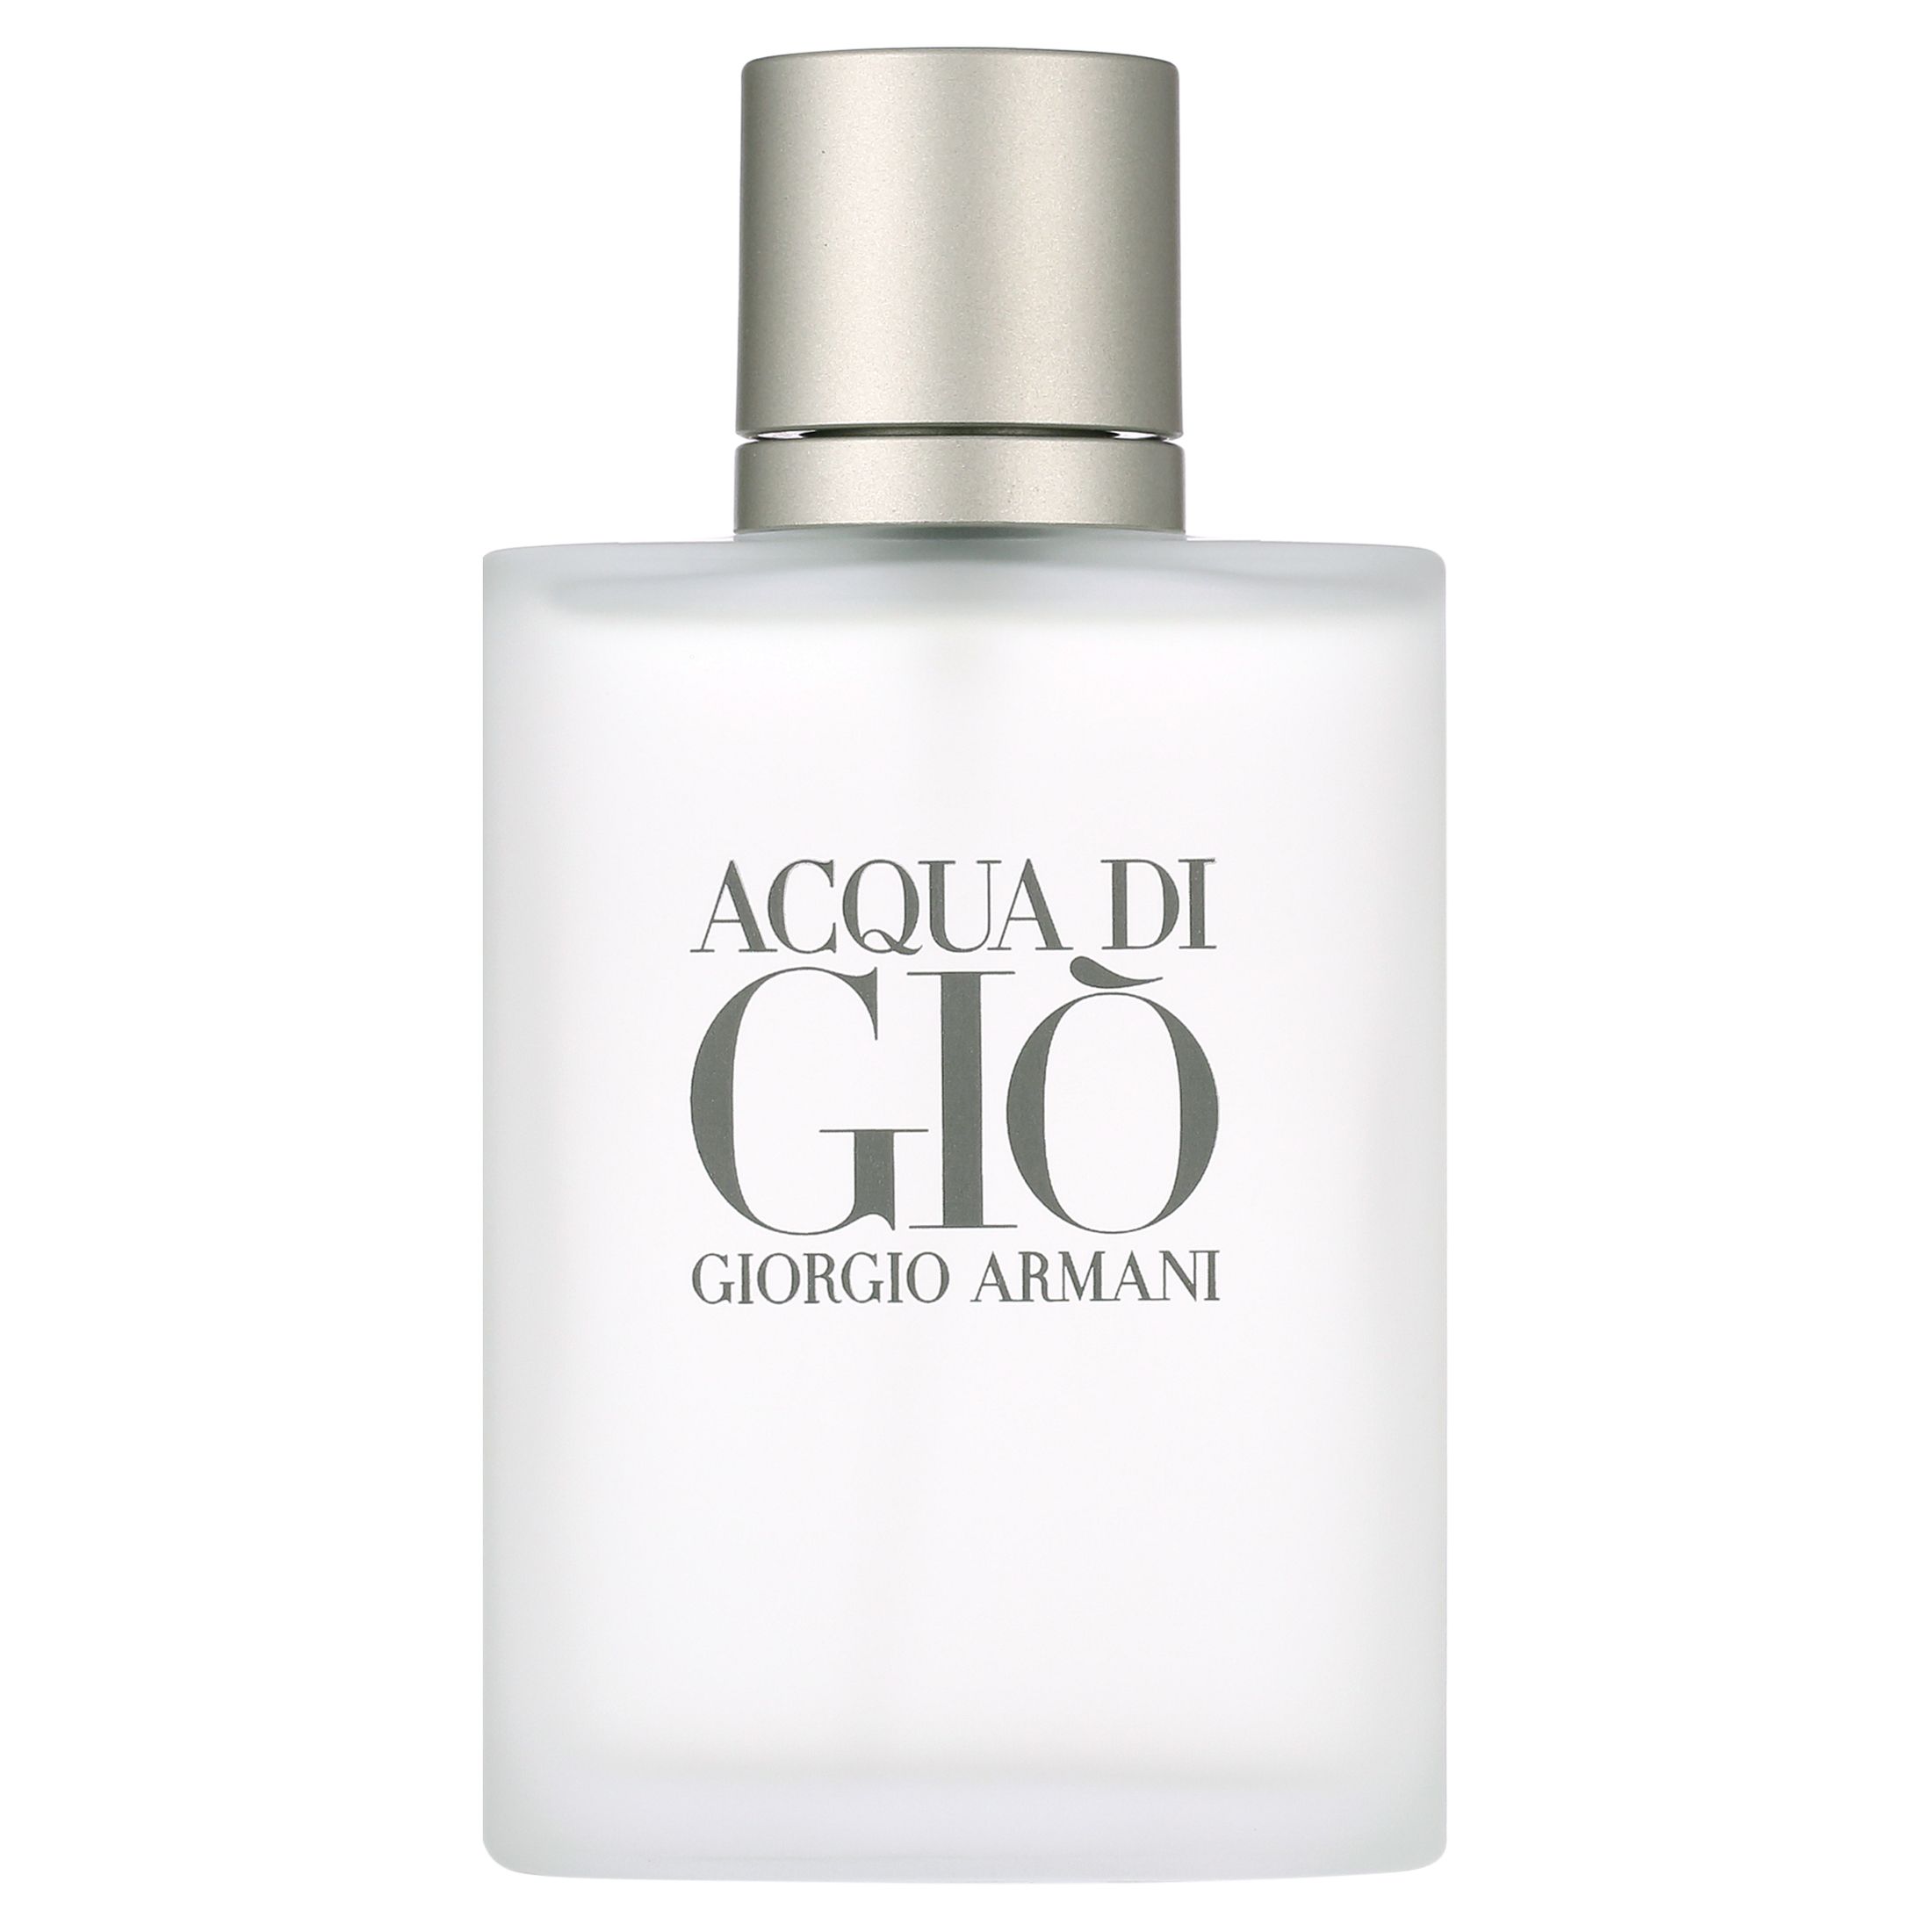 Giorgio Armani Acqua Di Gio Eau De Toilette, Cologne for Men, 3.4 oz | Walmart (US)